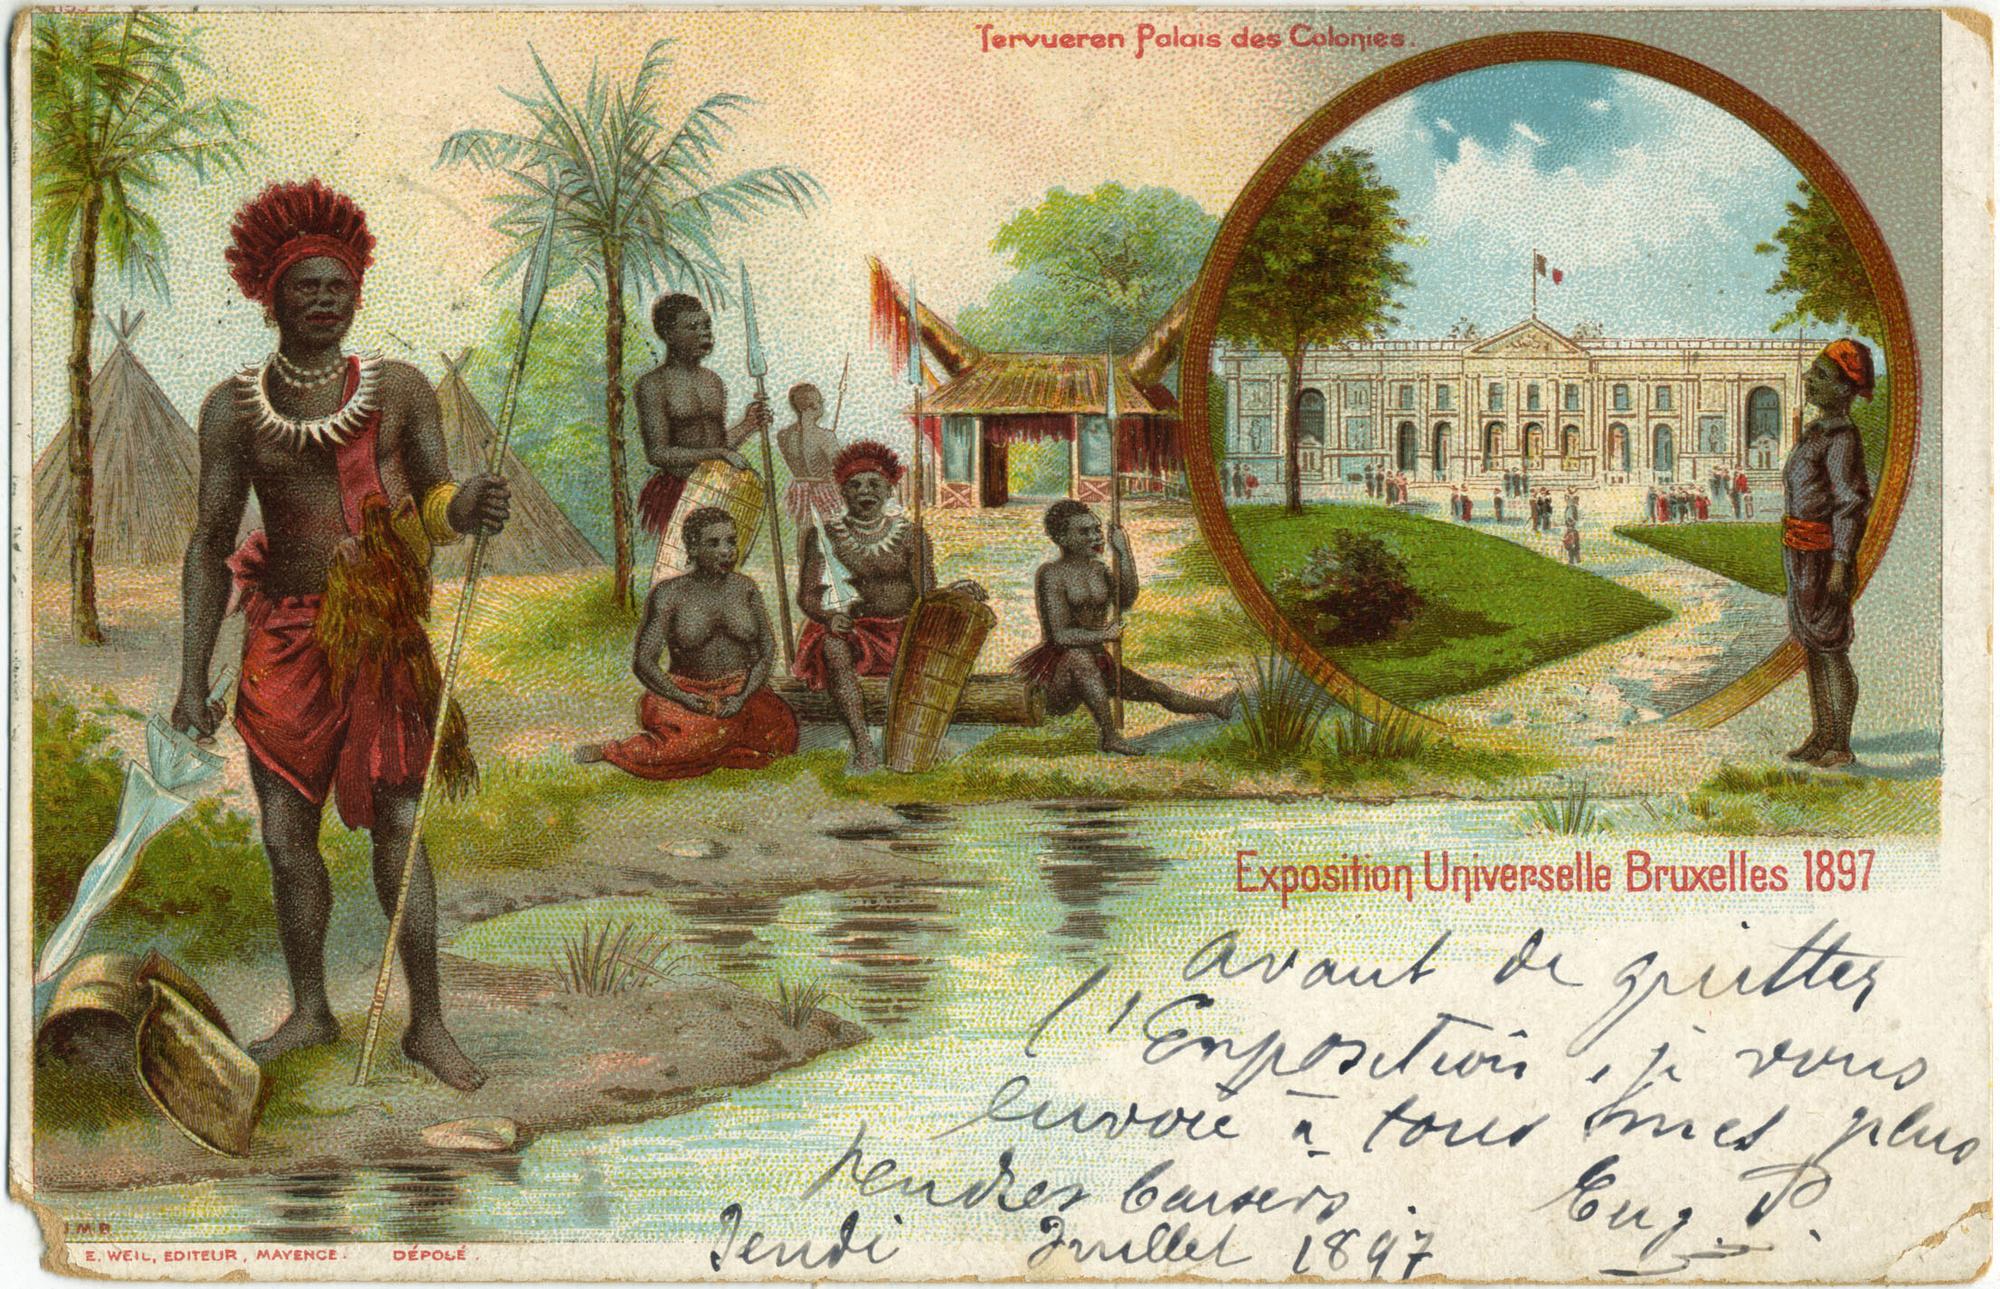 Palais des colonies. Exposition universelle de Bruxelles. Belgium. 1897. Postcard. © Groupe de recherche Achac/priv. coll.